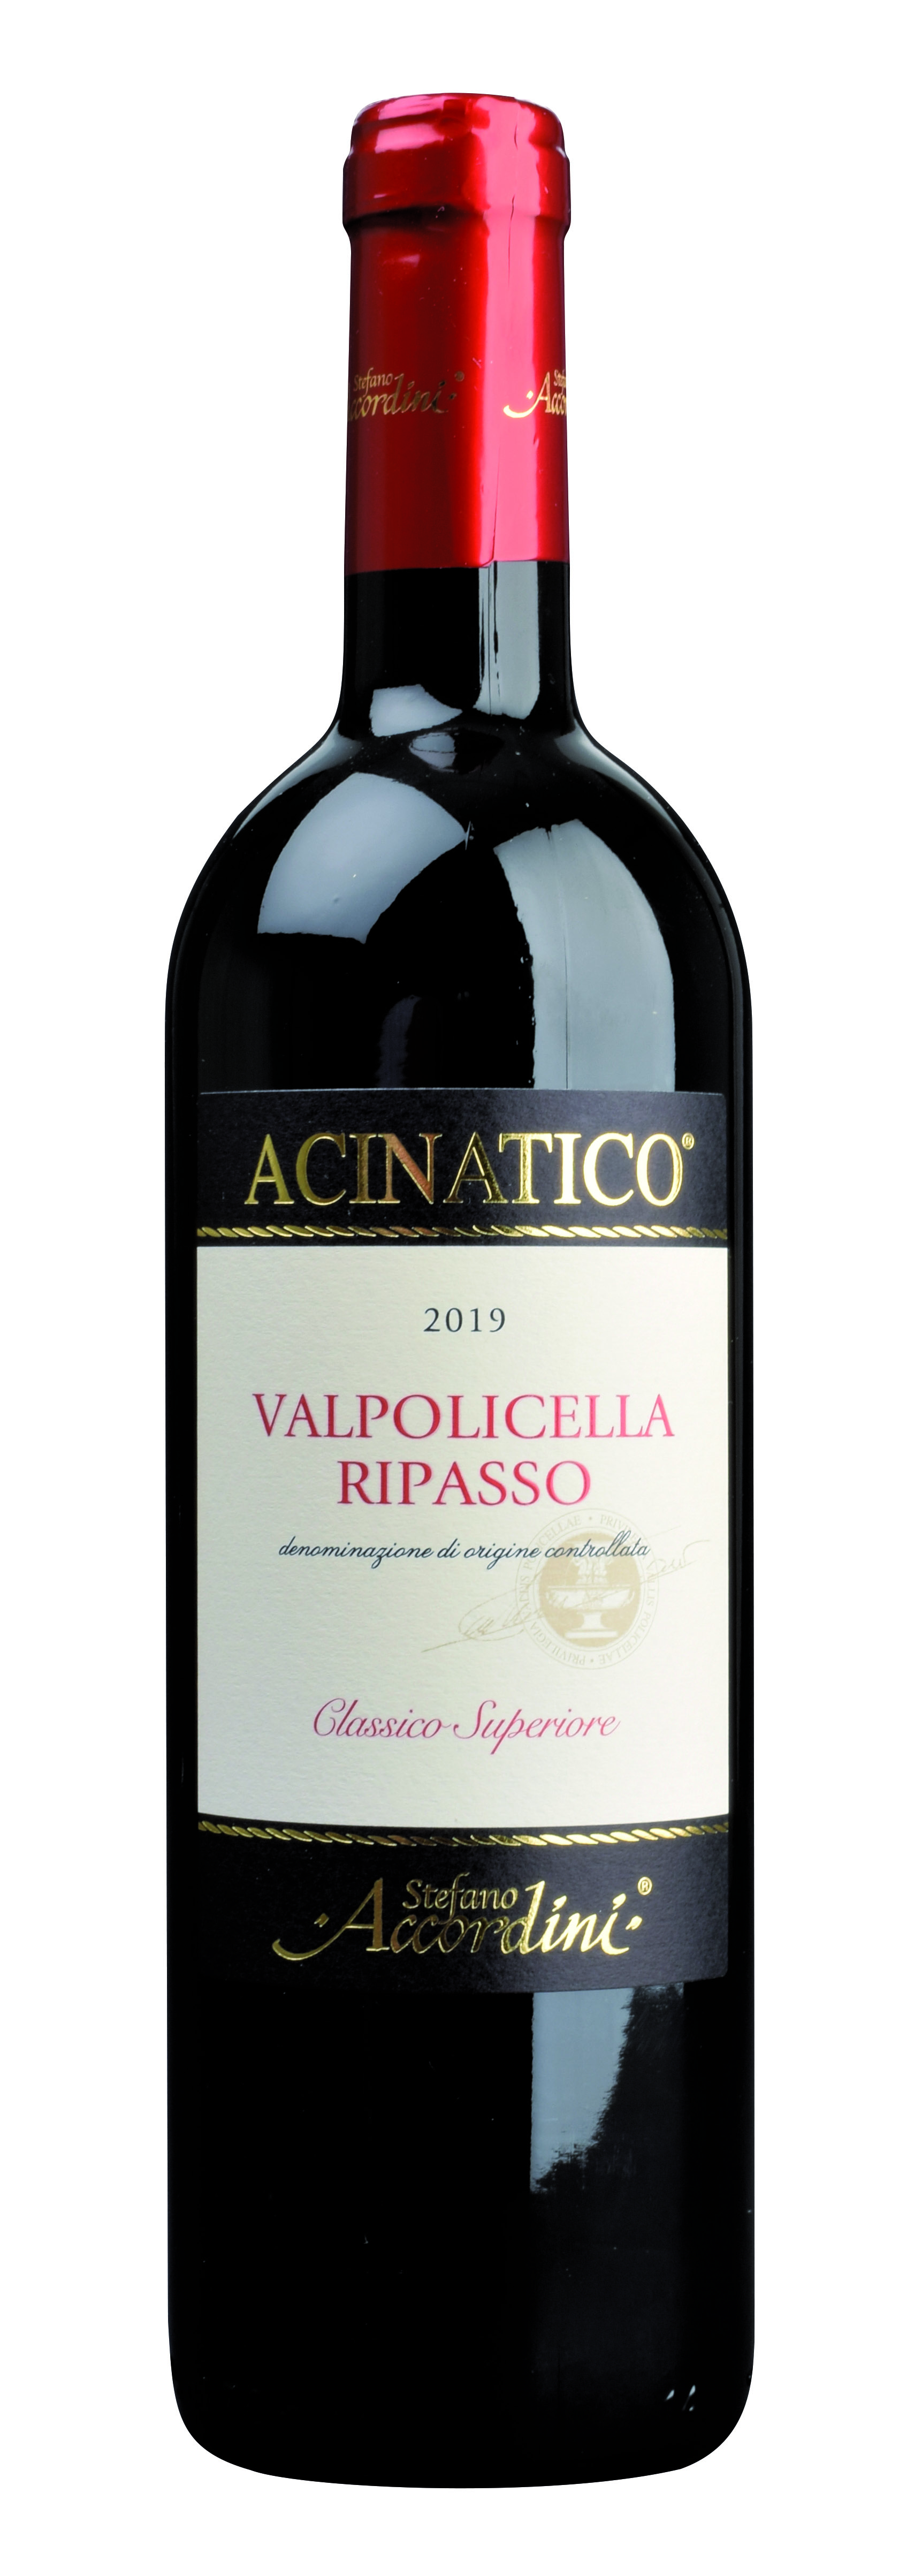 Valpolicella Classico Ripasso "Acinatico" D.O.C. 2019 0,75l